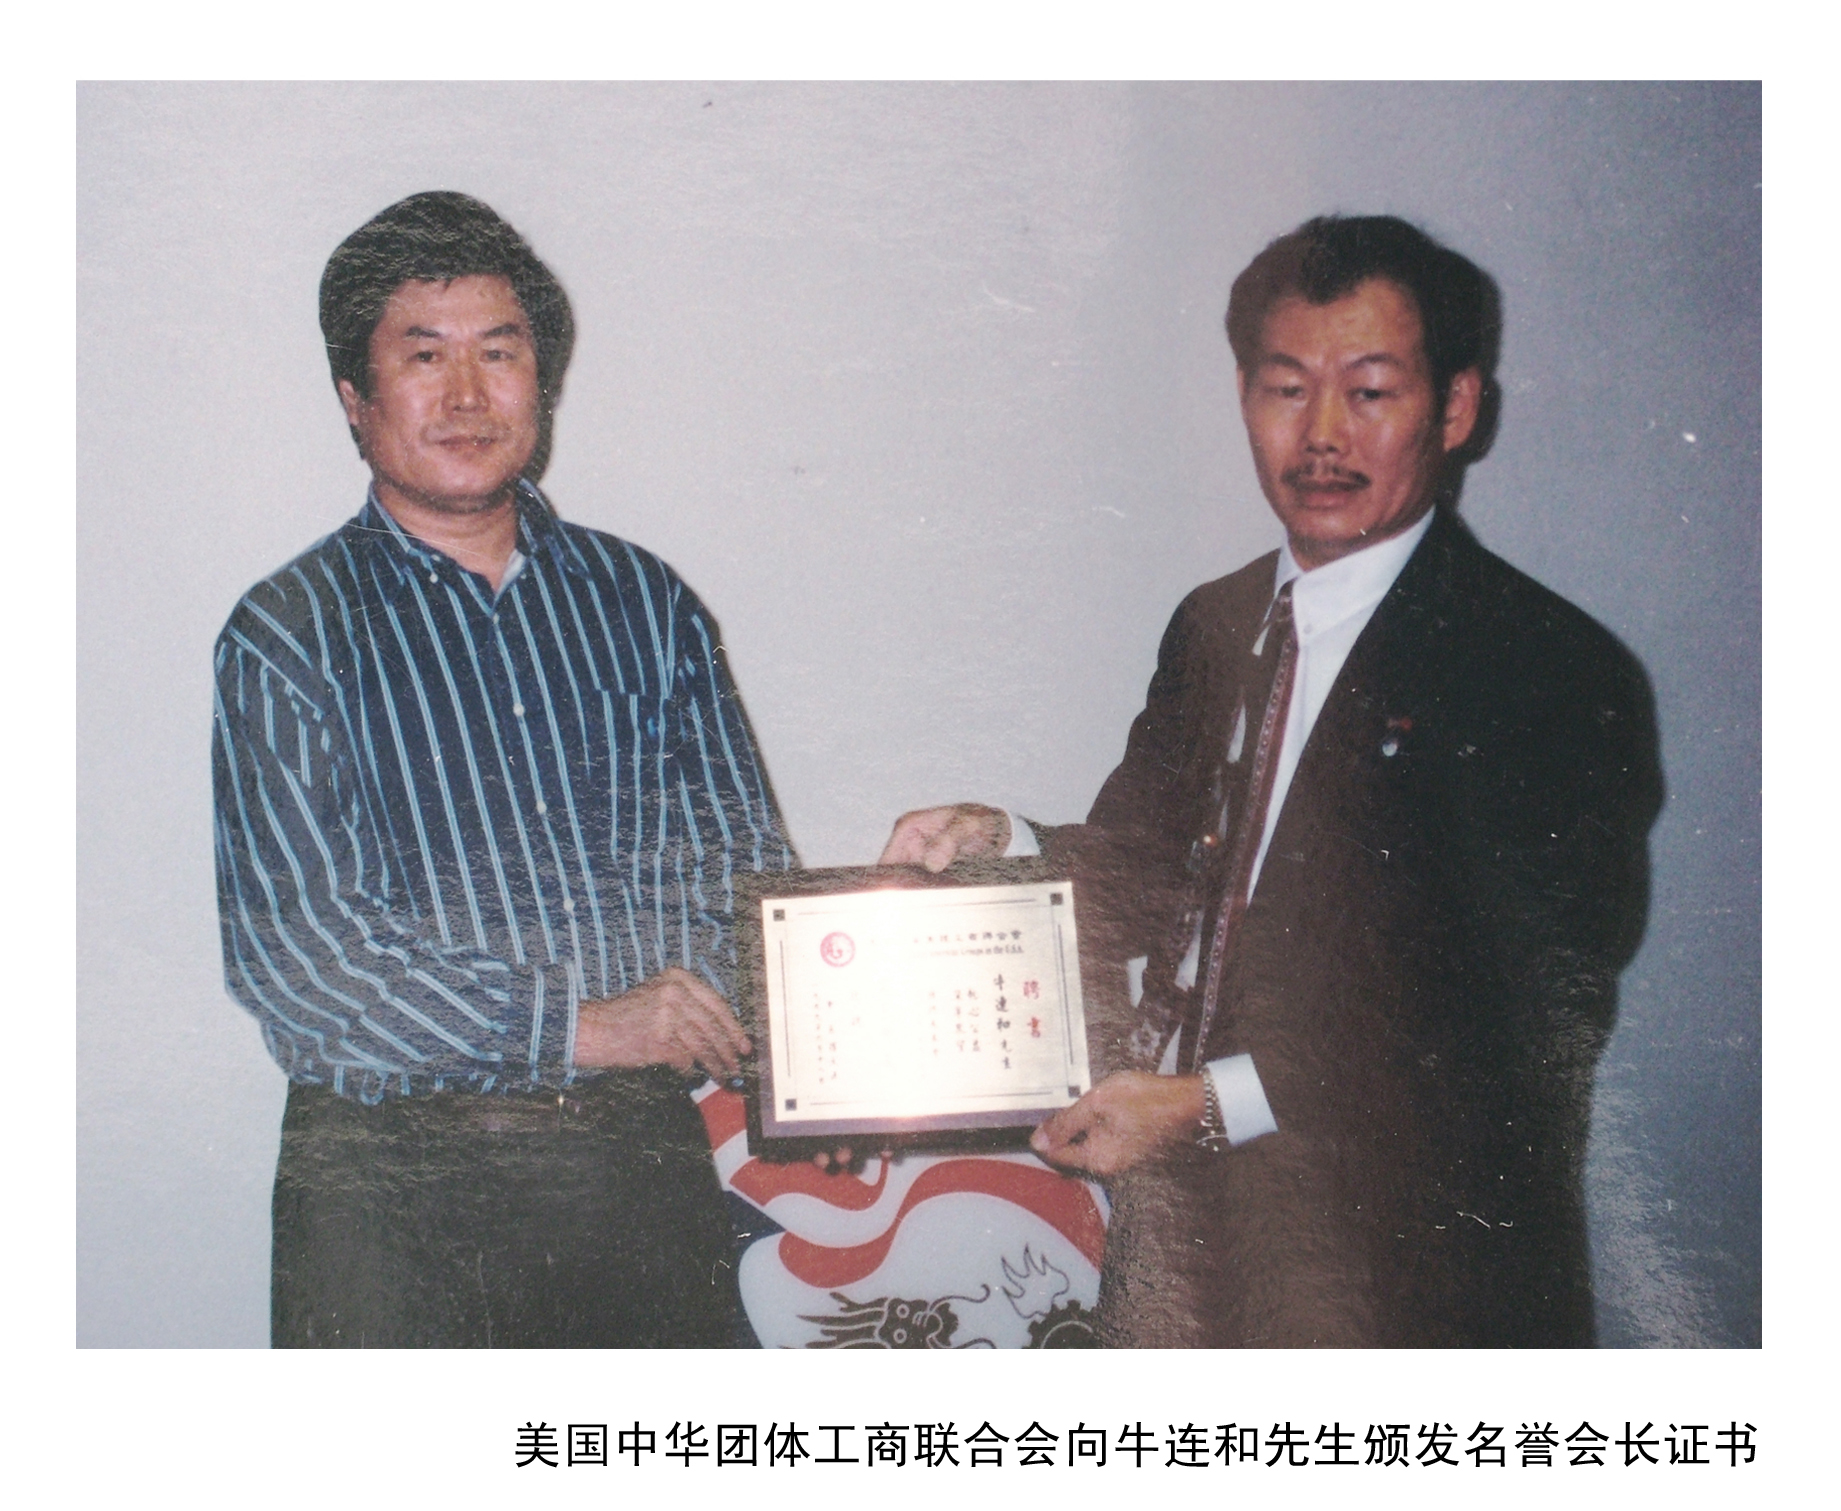 美國中華團體工商聯和會頒發名譽會長證書